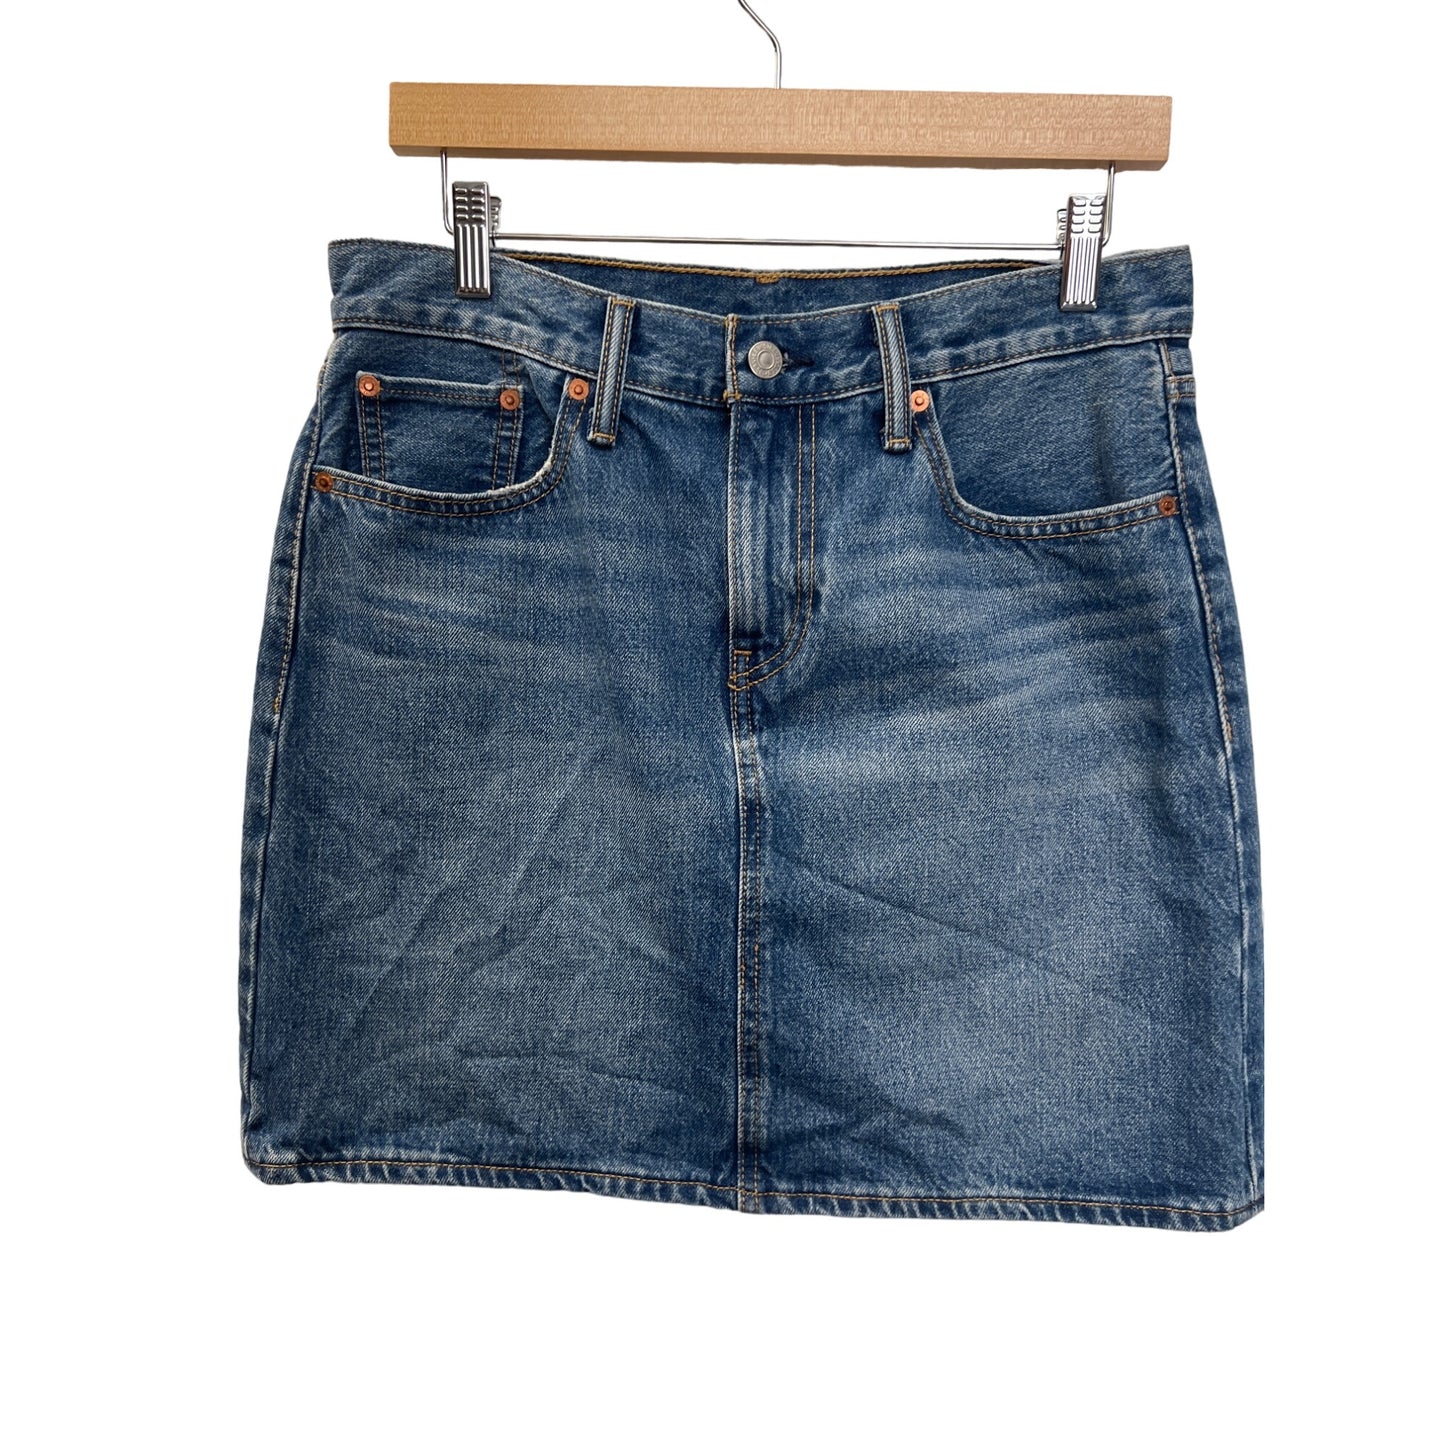 Levi's Classic Short Denim Red Tab Mini Jean Skirt